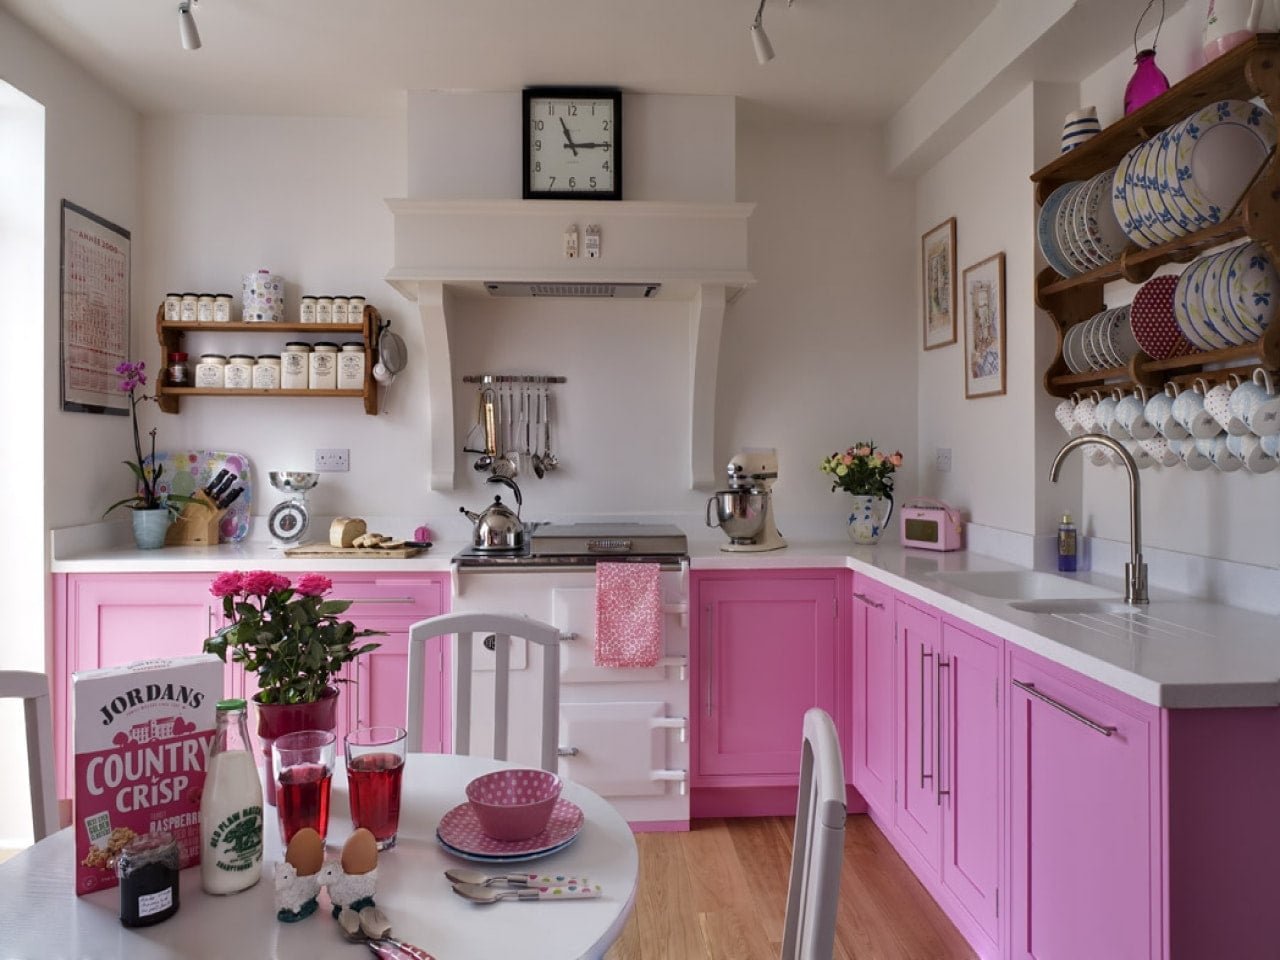 розово серая кухня в интерьере фото